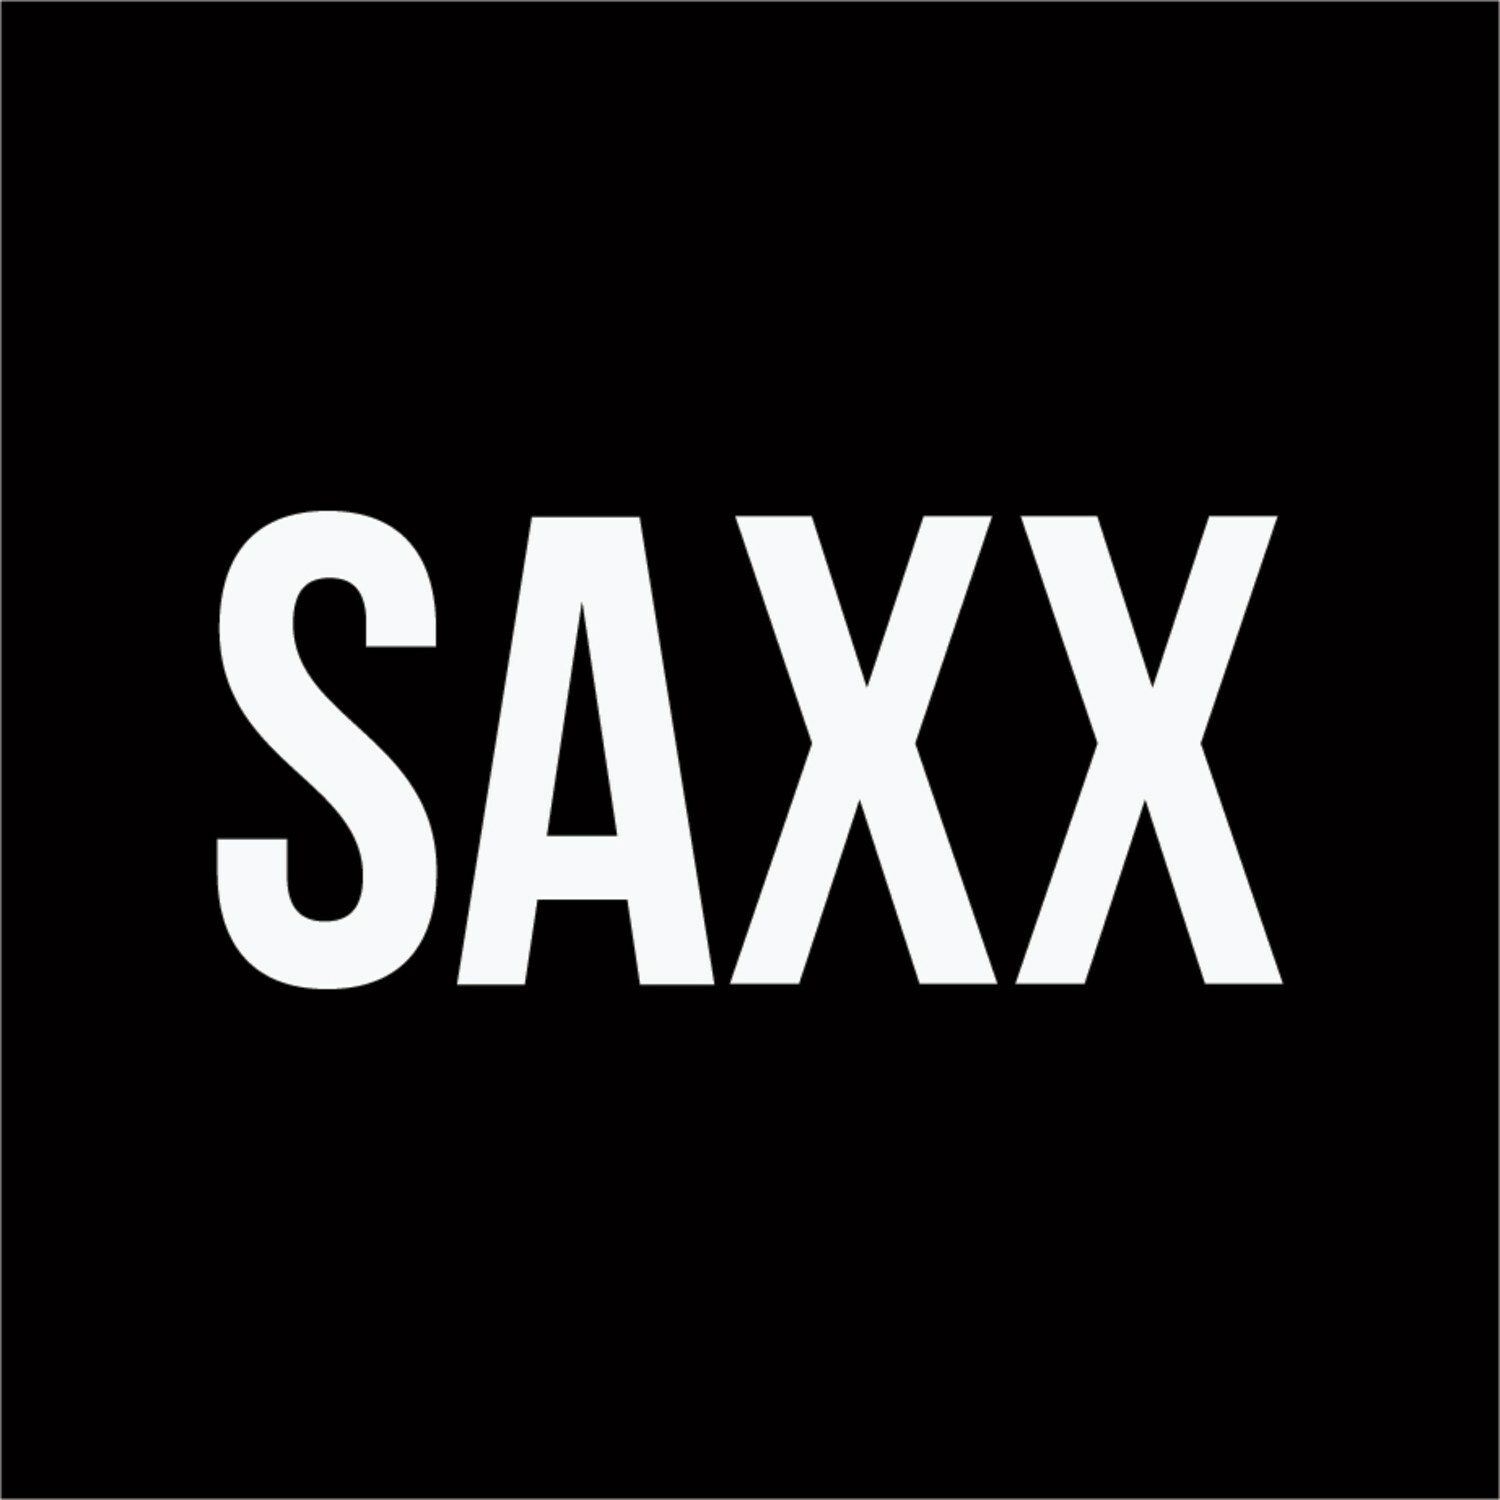 SAXX, 'Ball Masters' Begin Second Round: Men's Underwear Brand Inks ...